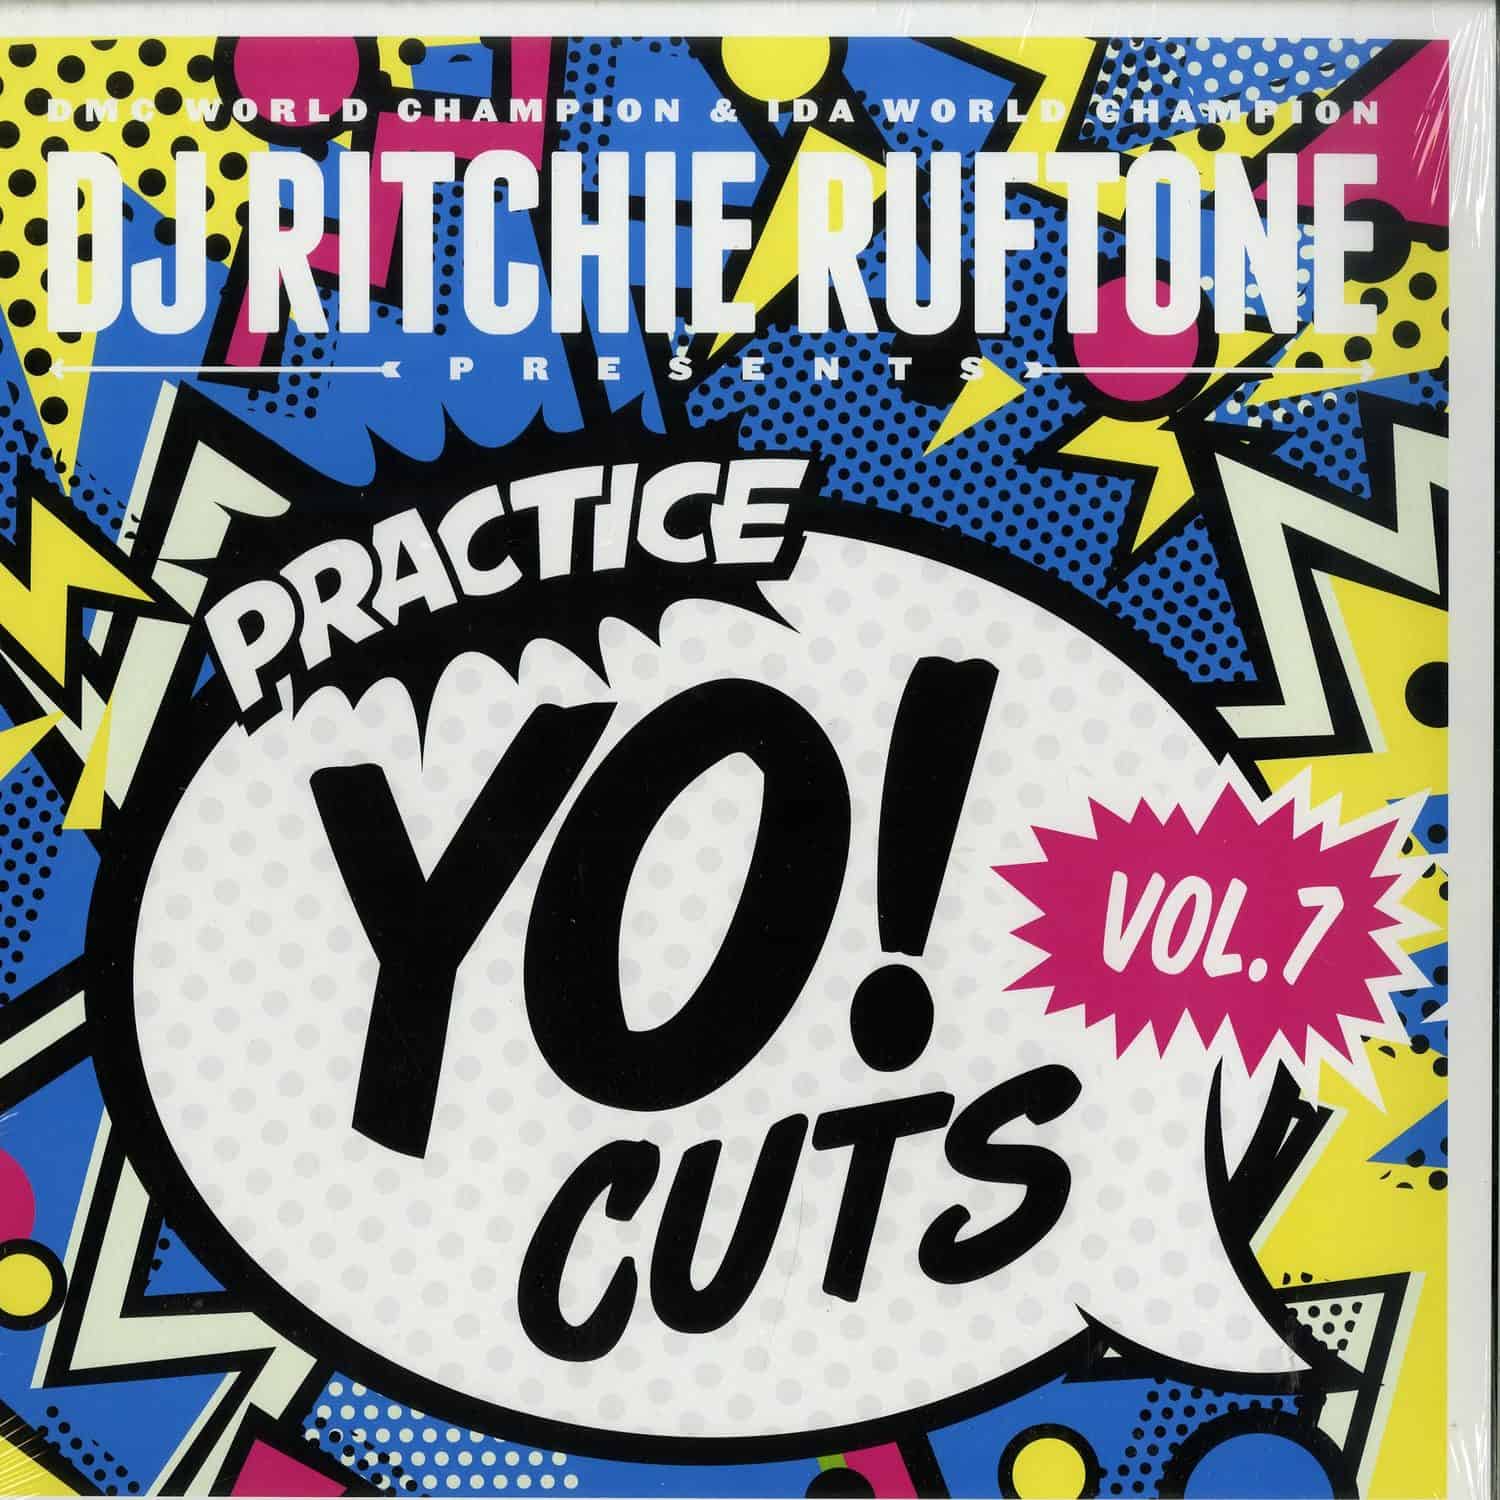 DJ Ritchie Rufftone - PRACTICE YO! CUTS VOL. 7